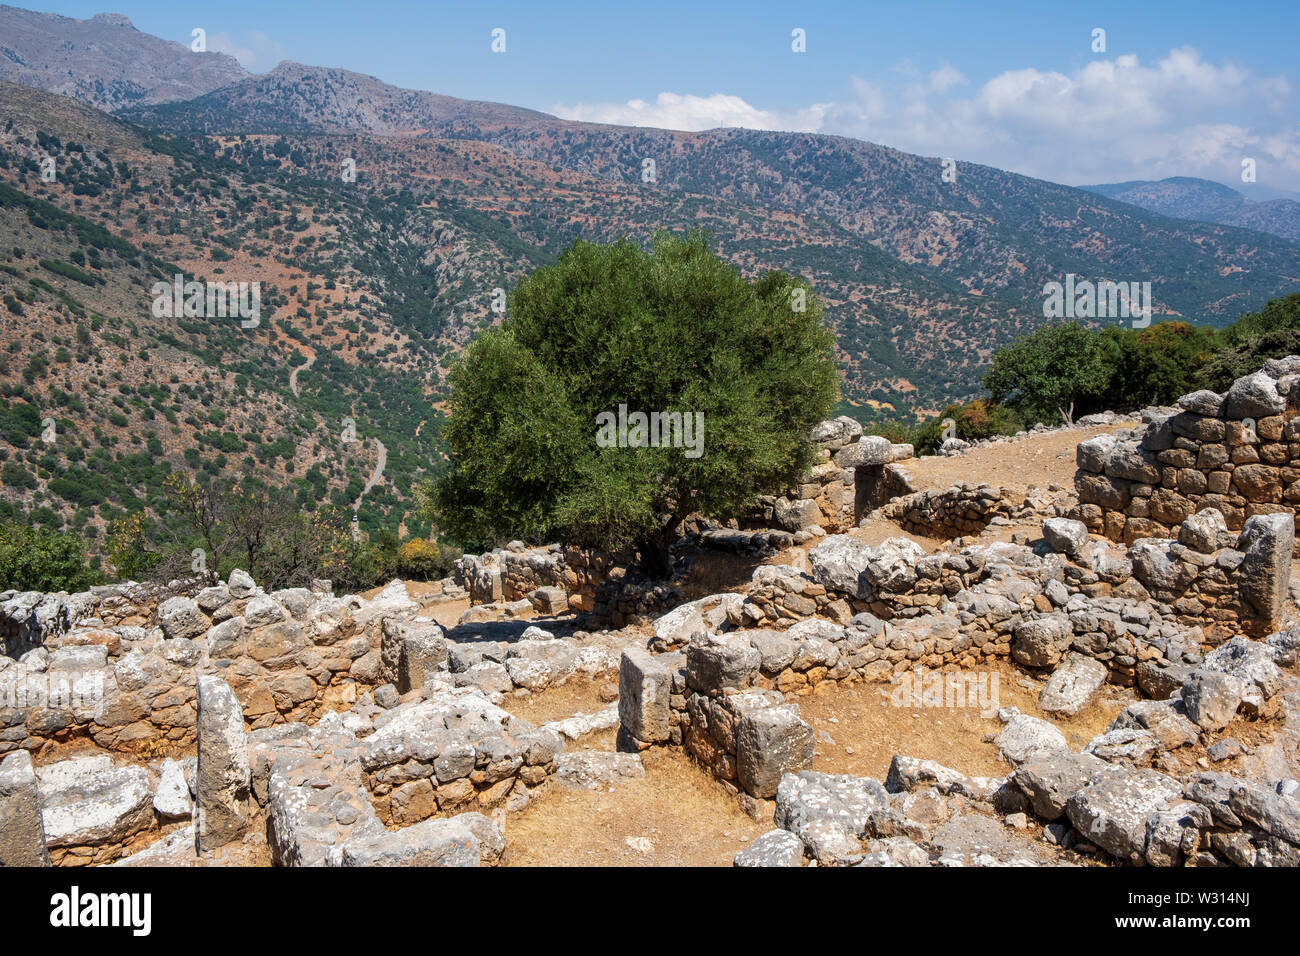 Hilltop rovine a lato del sito archeologico, Creta Foto Stock